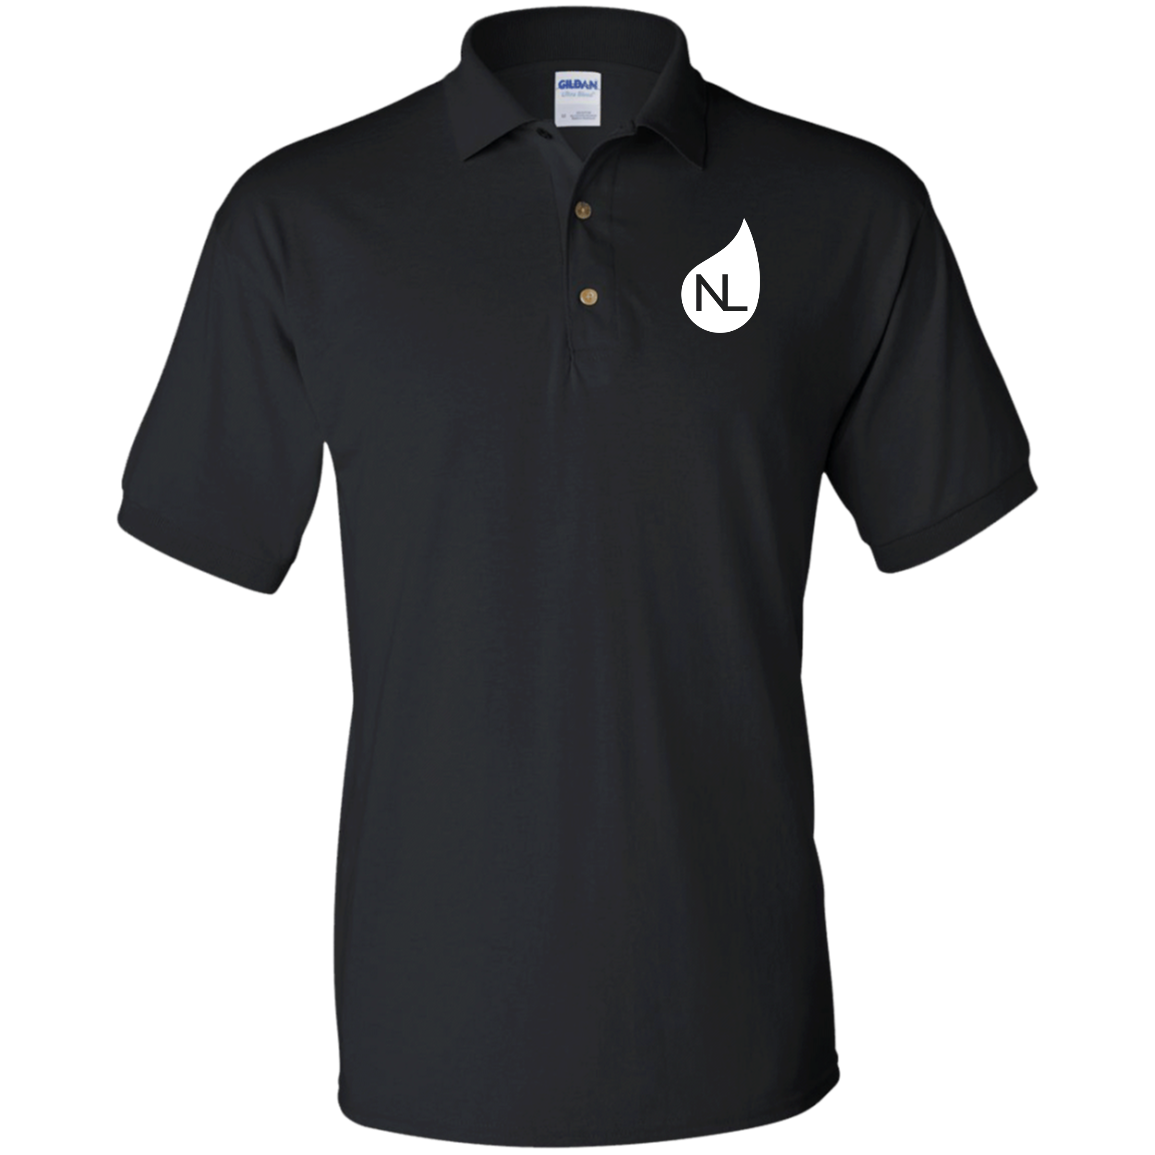 Polo Shirts - NL Icon